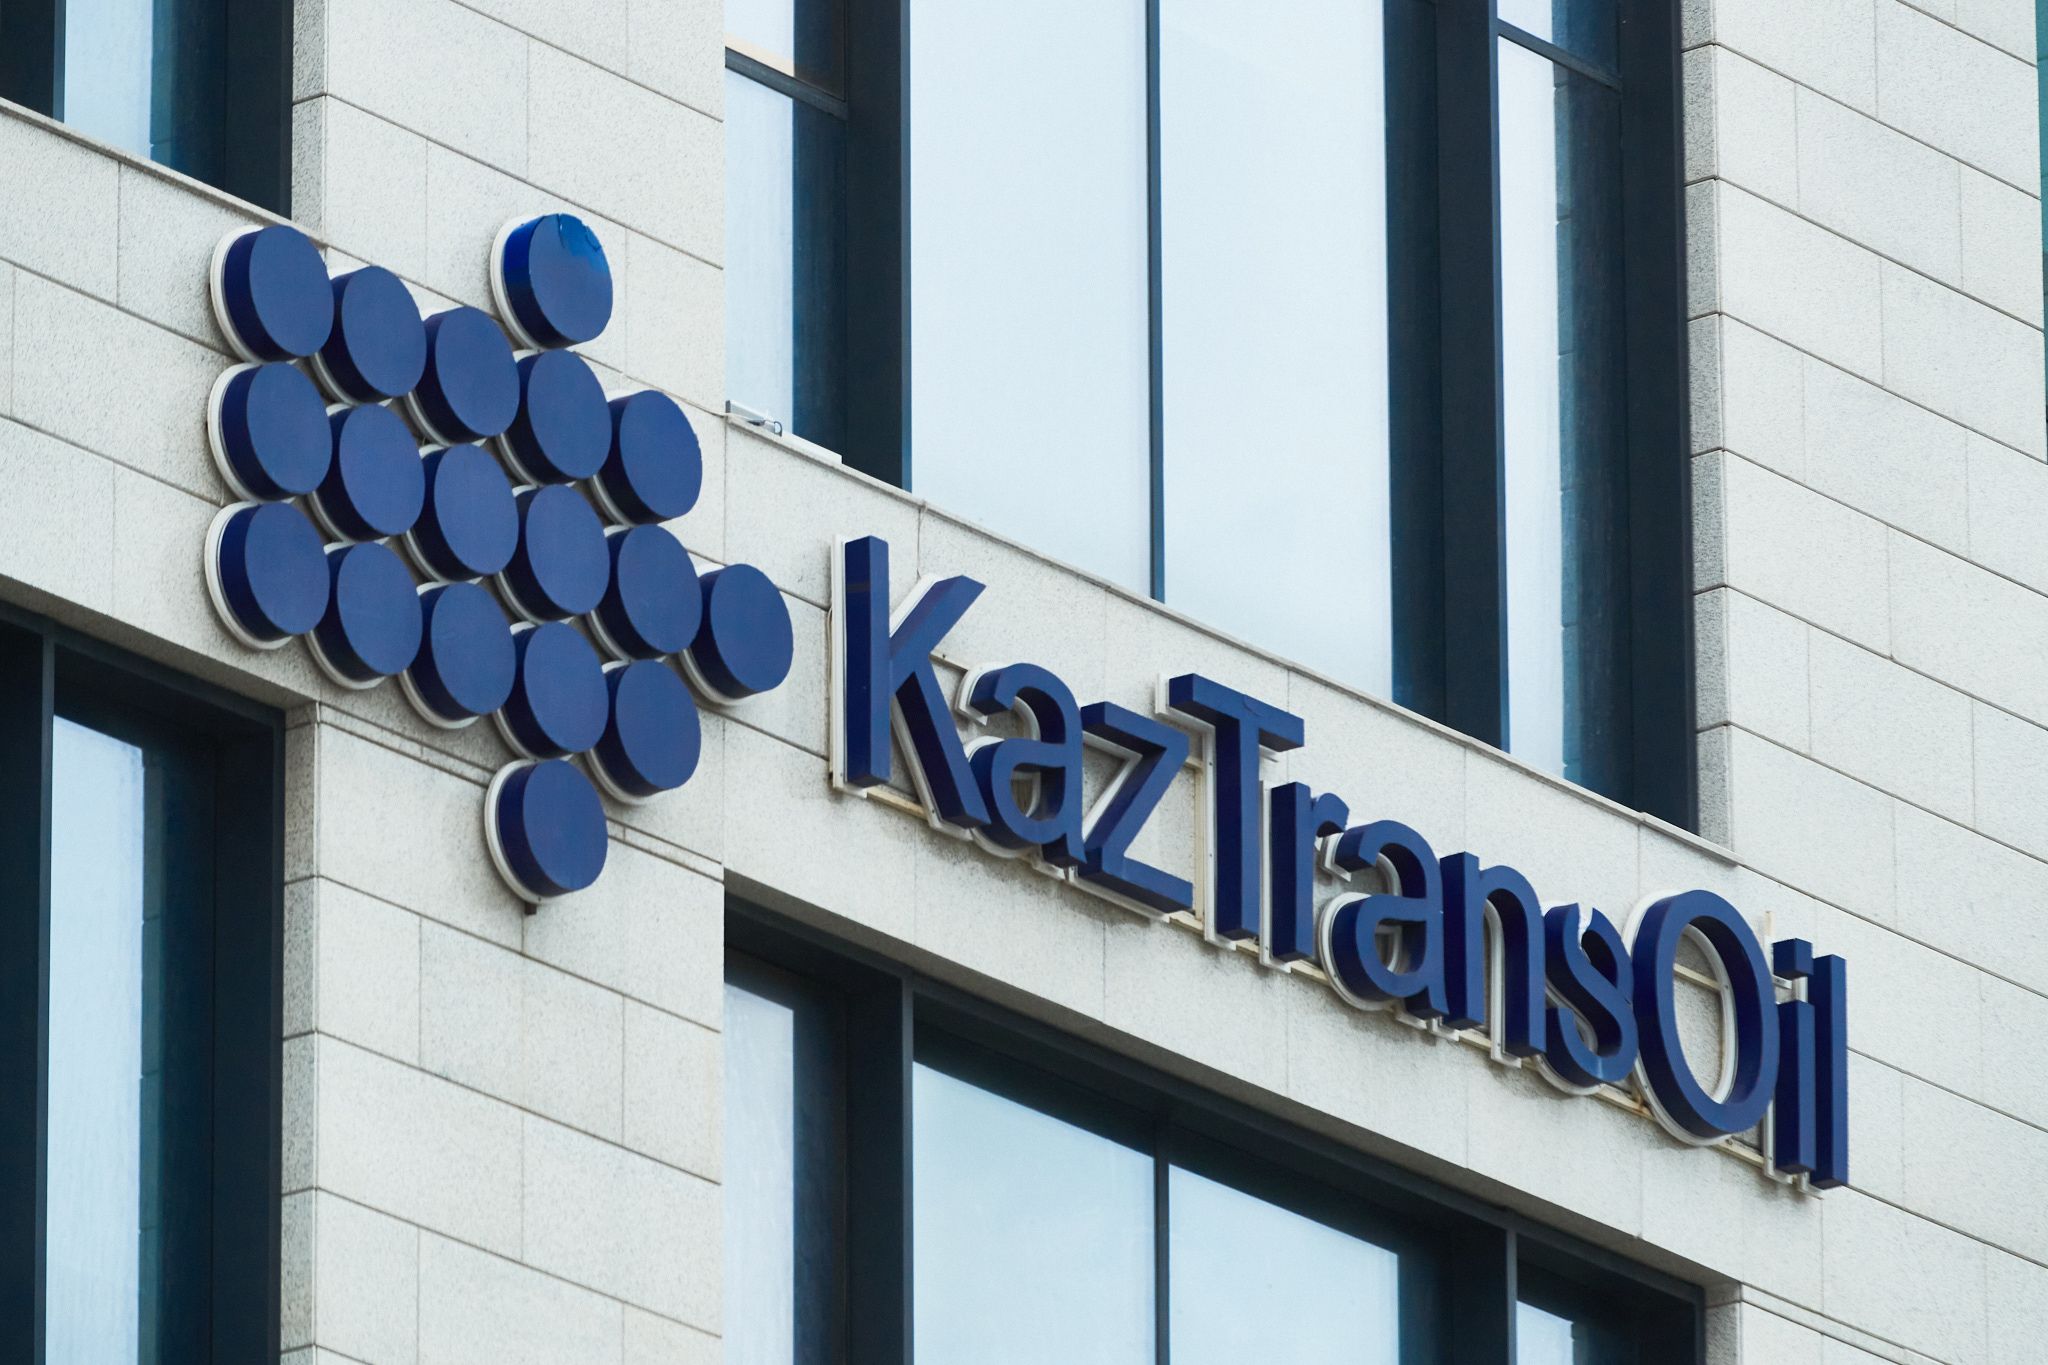 Чистая прибыль КазТрансОйла снизилась на 8,2% - новости Kapital.kz